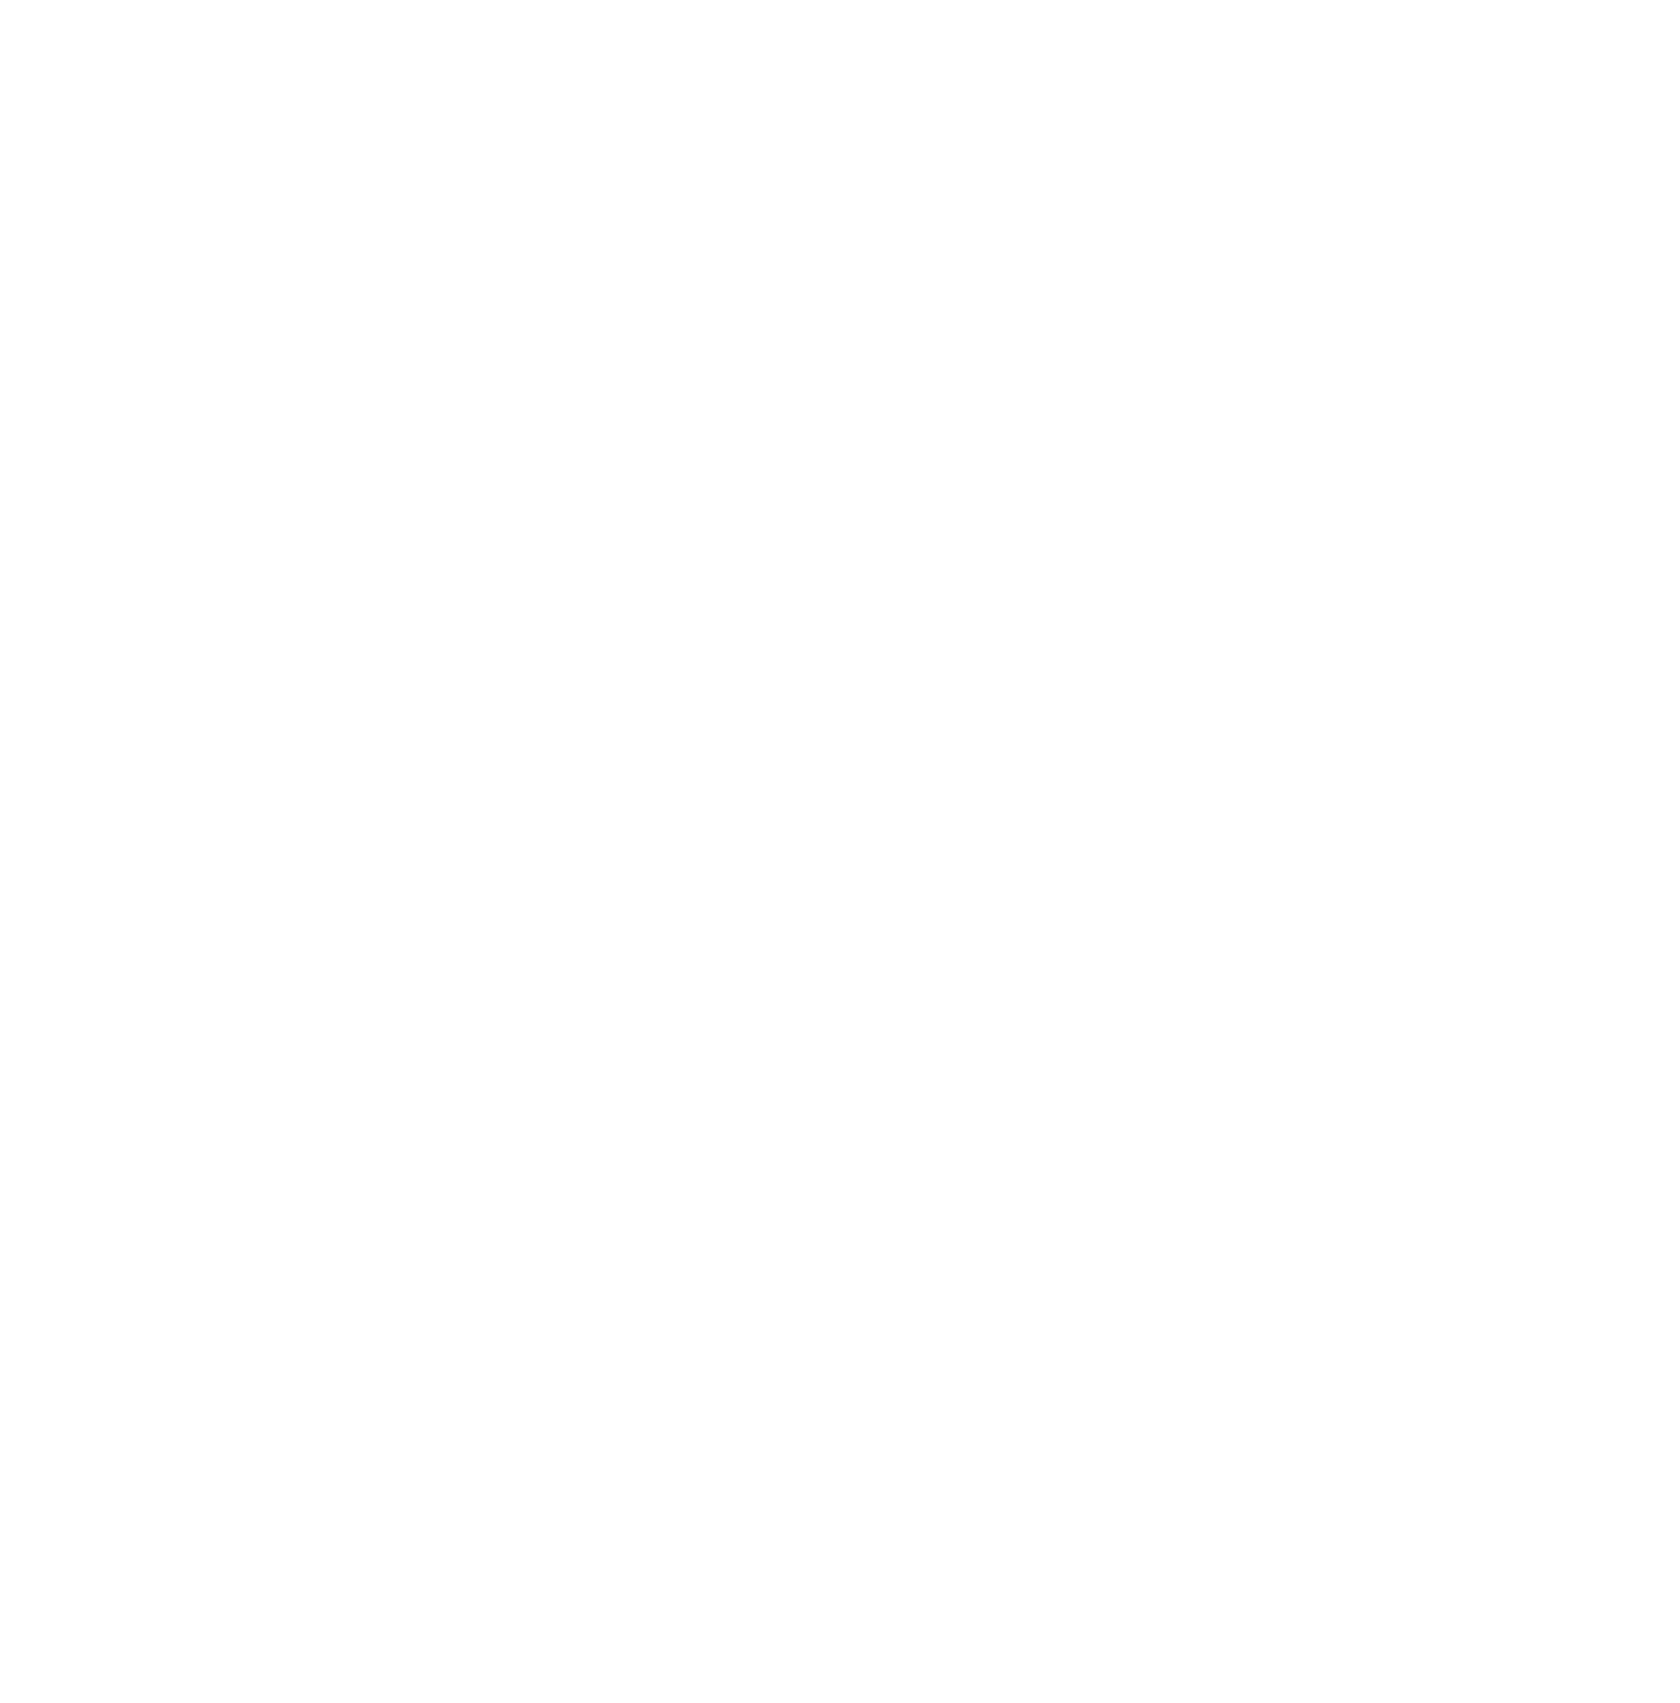 Искандер Дух, ломающий раму бытия Смешанная техника:  акриловая рельефная паста, масляные лессировки, полиграфическая поталь. Размер 129х129 см. Год создания 2022-2023.